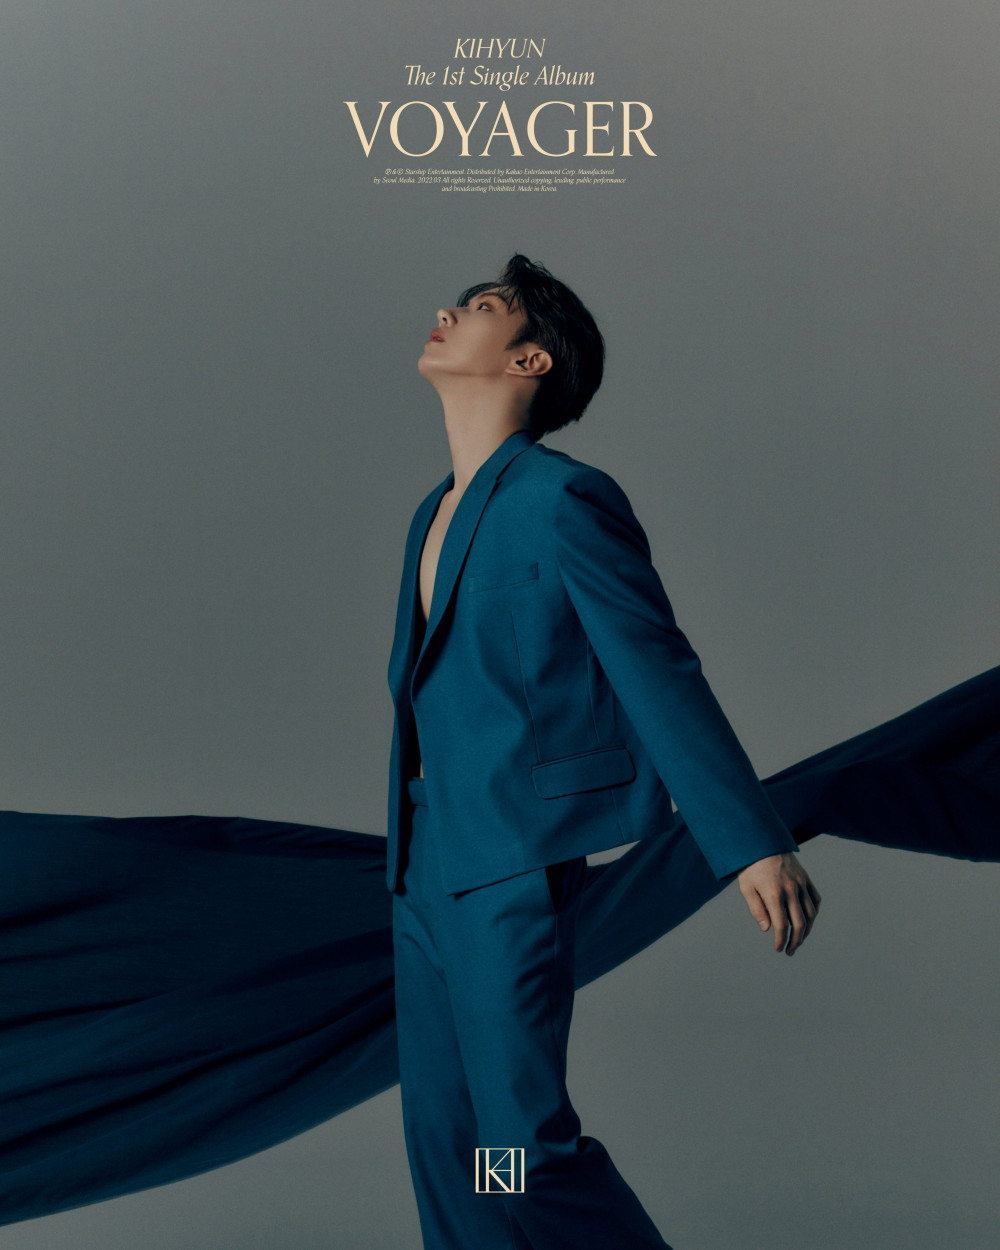 [Дебют] Кихён из MONSTA X сингл-альбом "VOYAGER": музыкальный клип